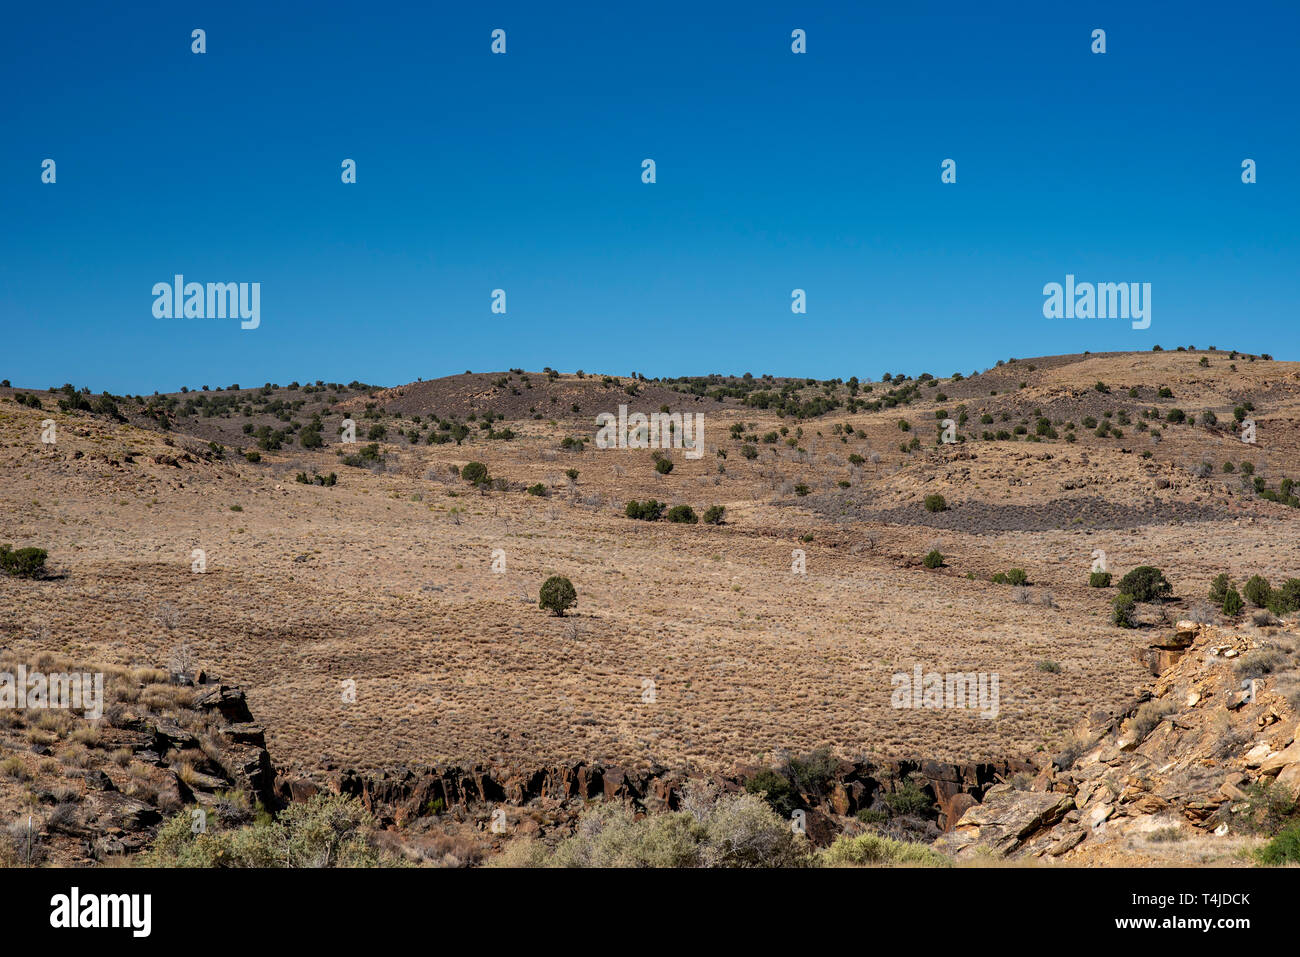 Rocky rugueuse paysage désertique avec des montagnes brunes avec peu de végétation sous un ciel bleu. Banque D'Images